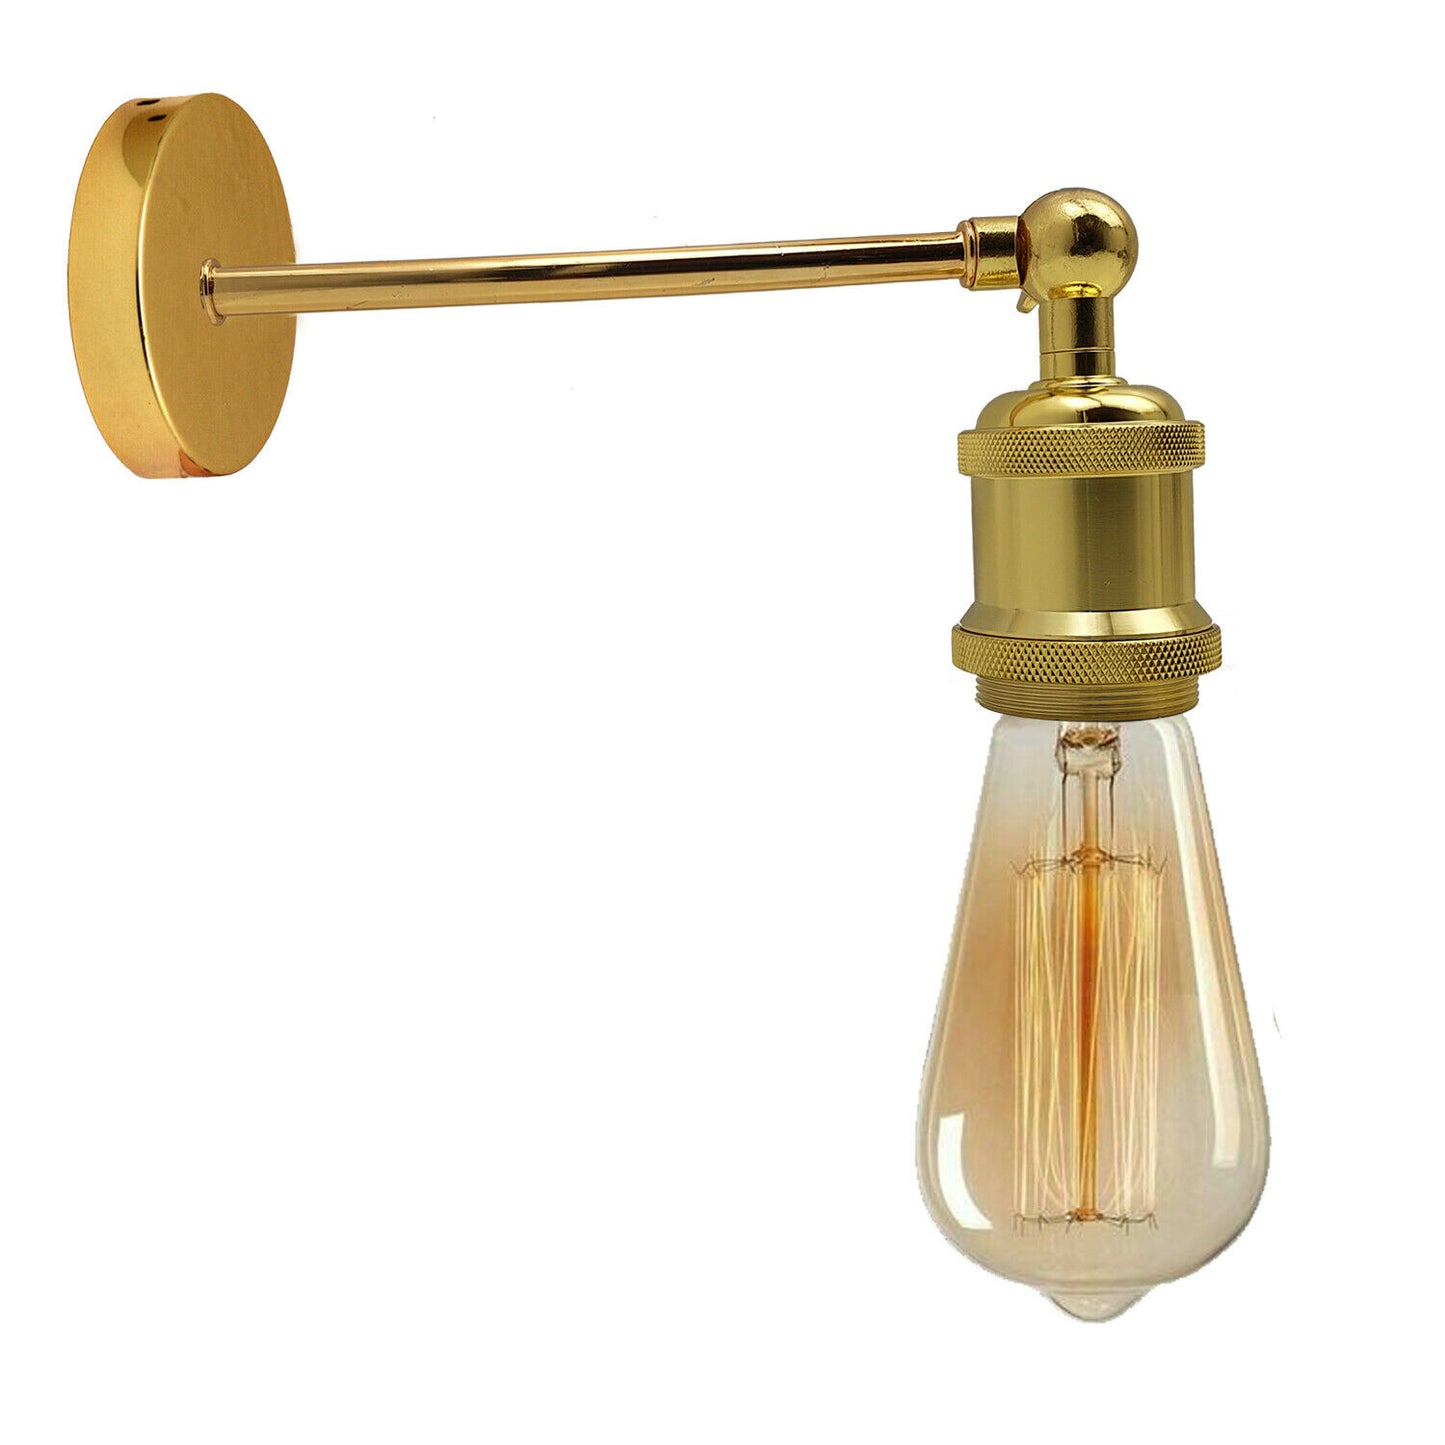 Industrielle französisches Gold Retro verstellbare Wandleuchten Vintage Style Wandleuchte Lampe Fitting Kit